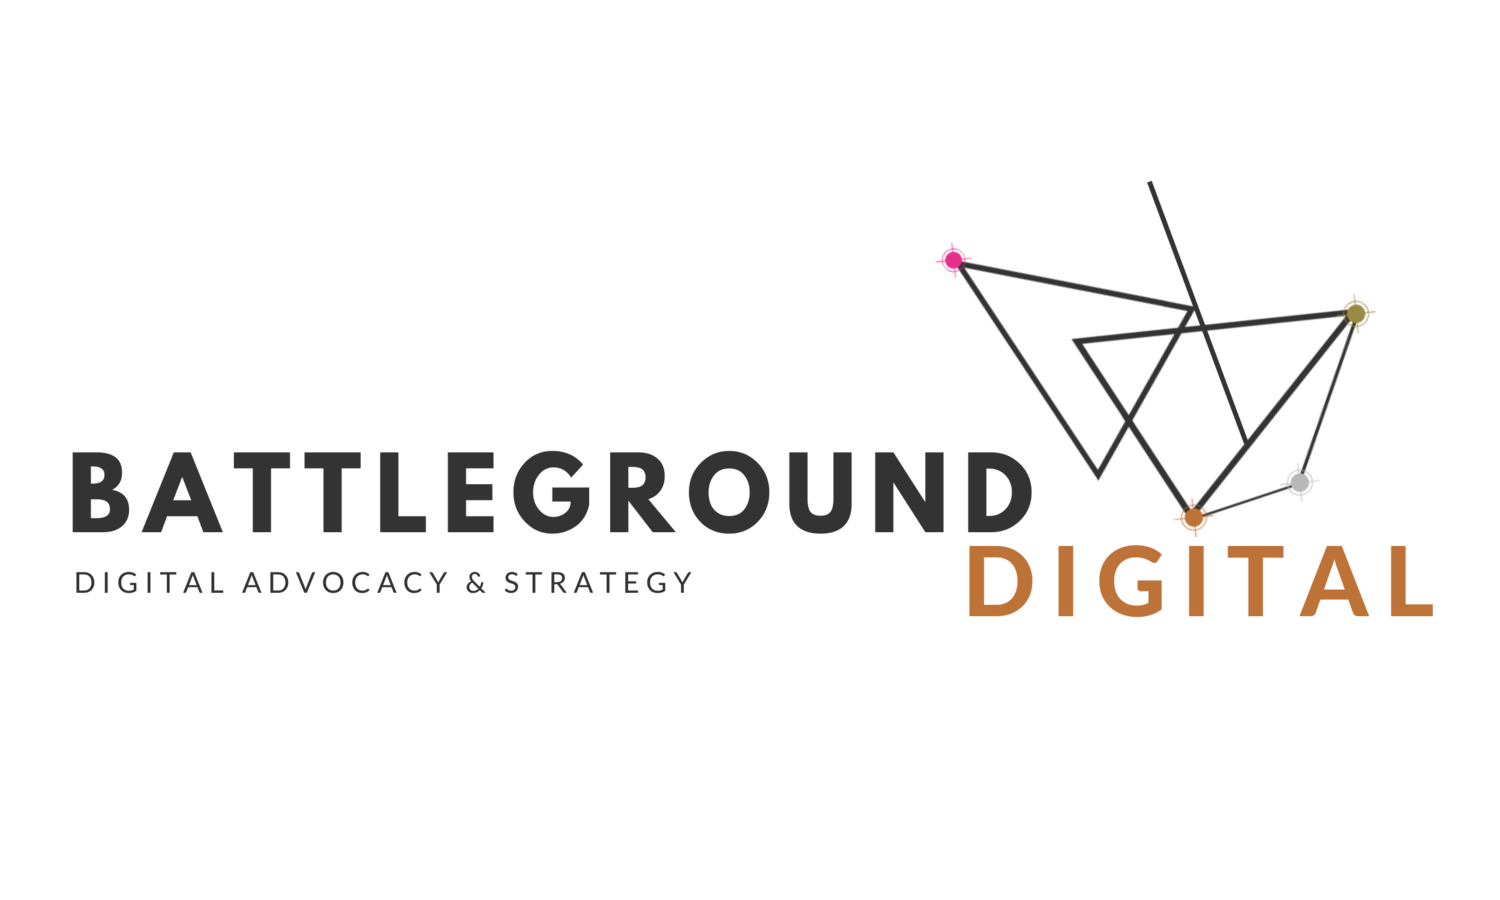 Battleground Digital